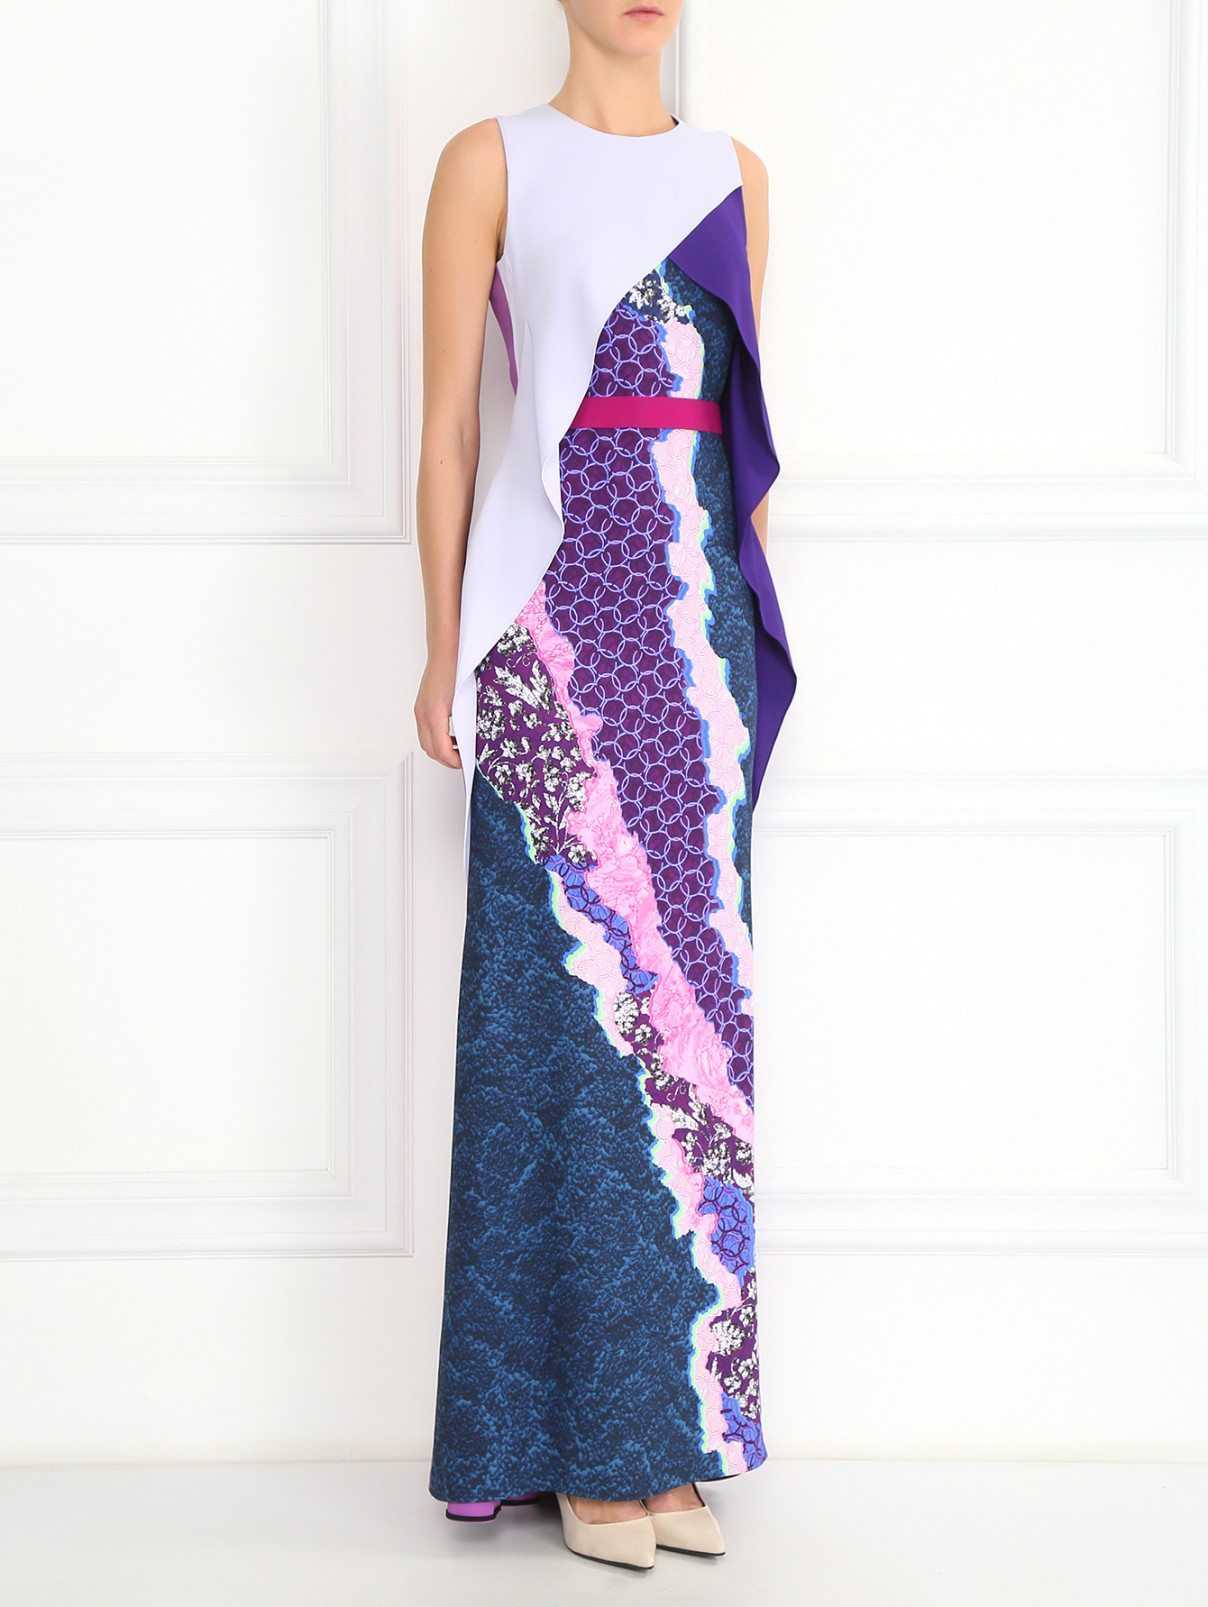 Платье-макси с принтом и поясом Peter Pilotto  –  Модель Общий вид  – Цвет:  Фиолетовый